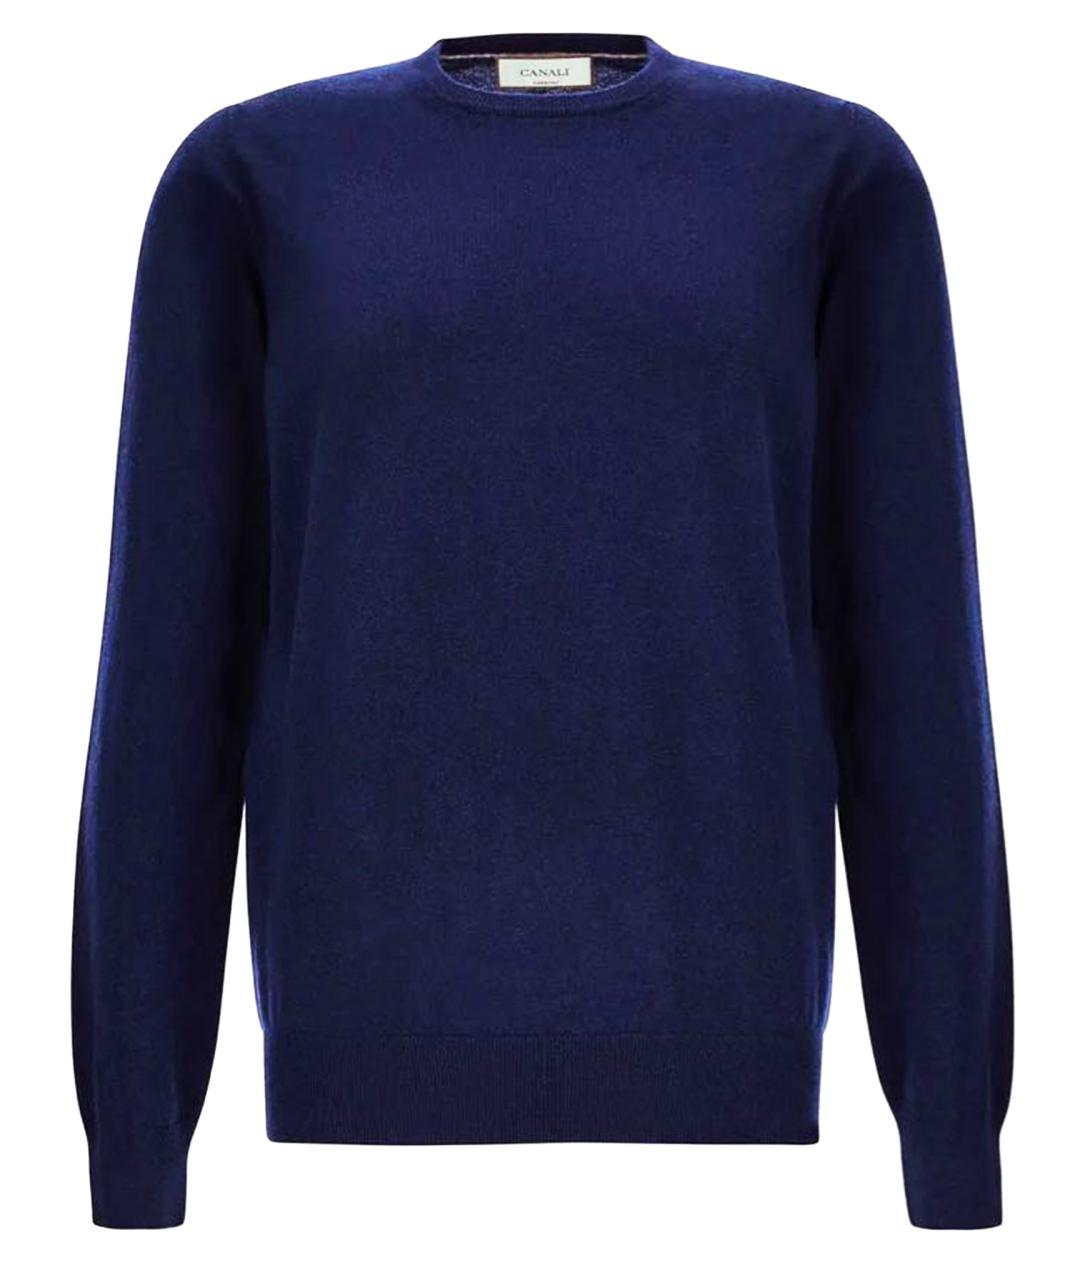 CANALI Темно-синий кашемировый джемпер / свитер, фото 1